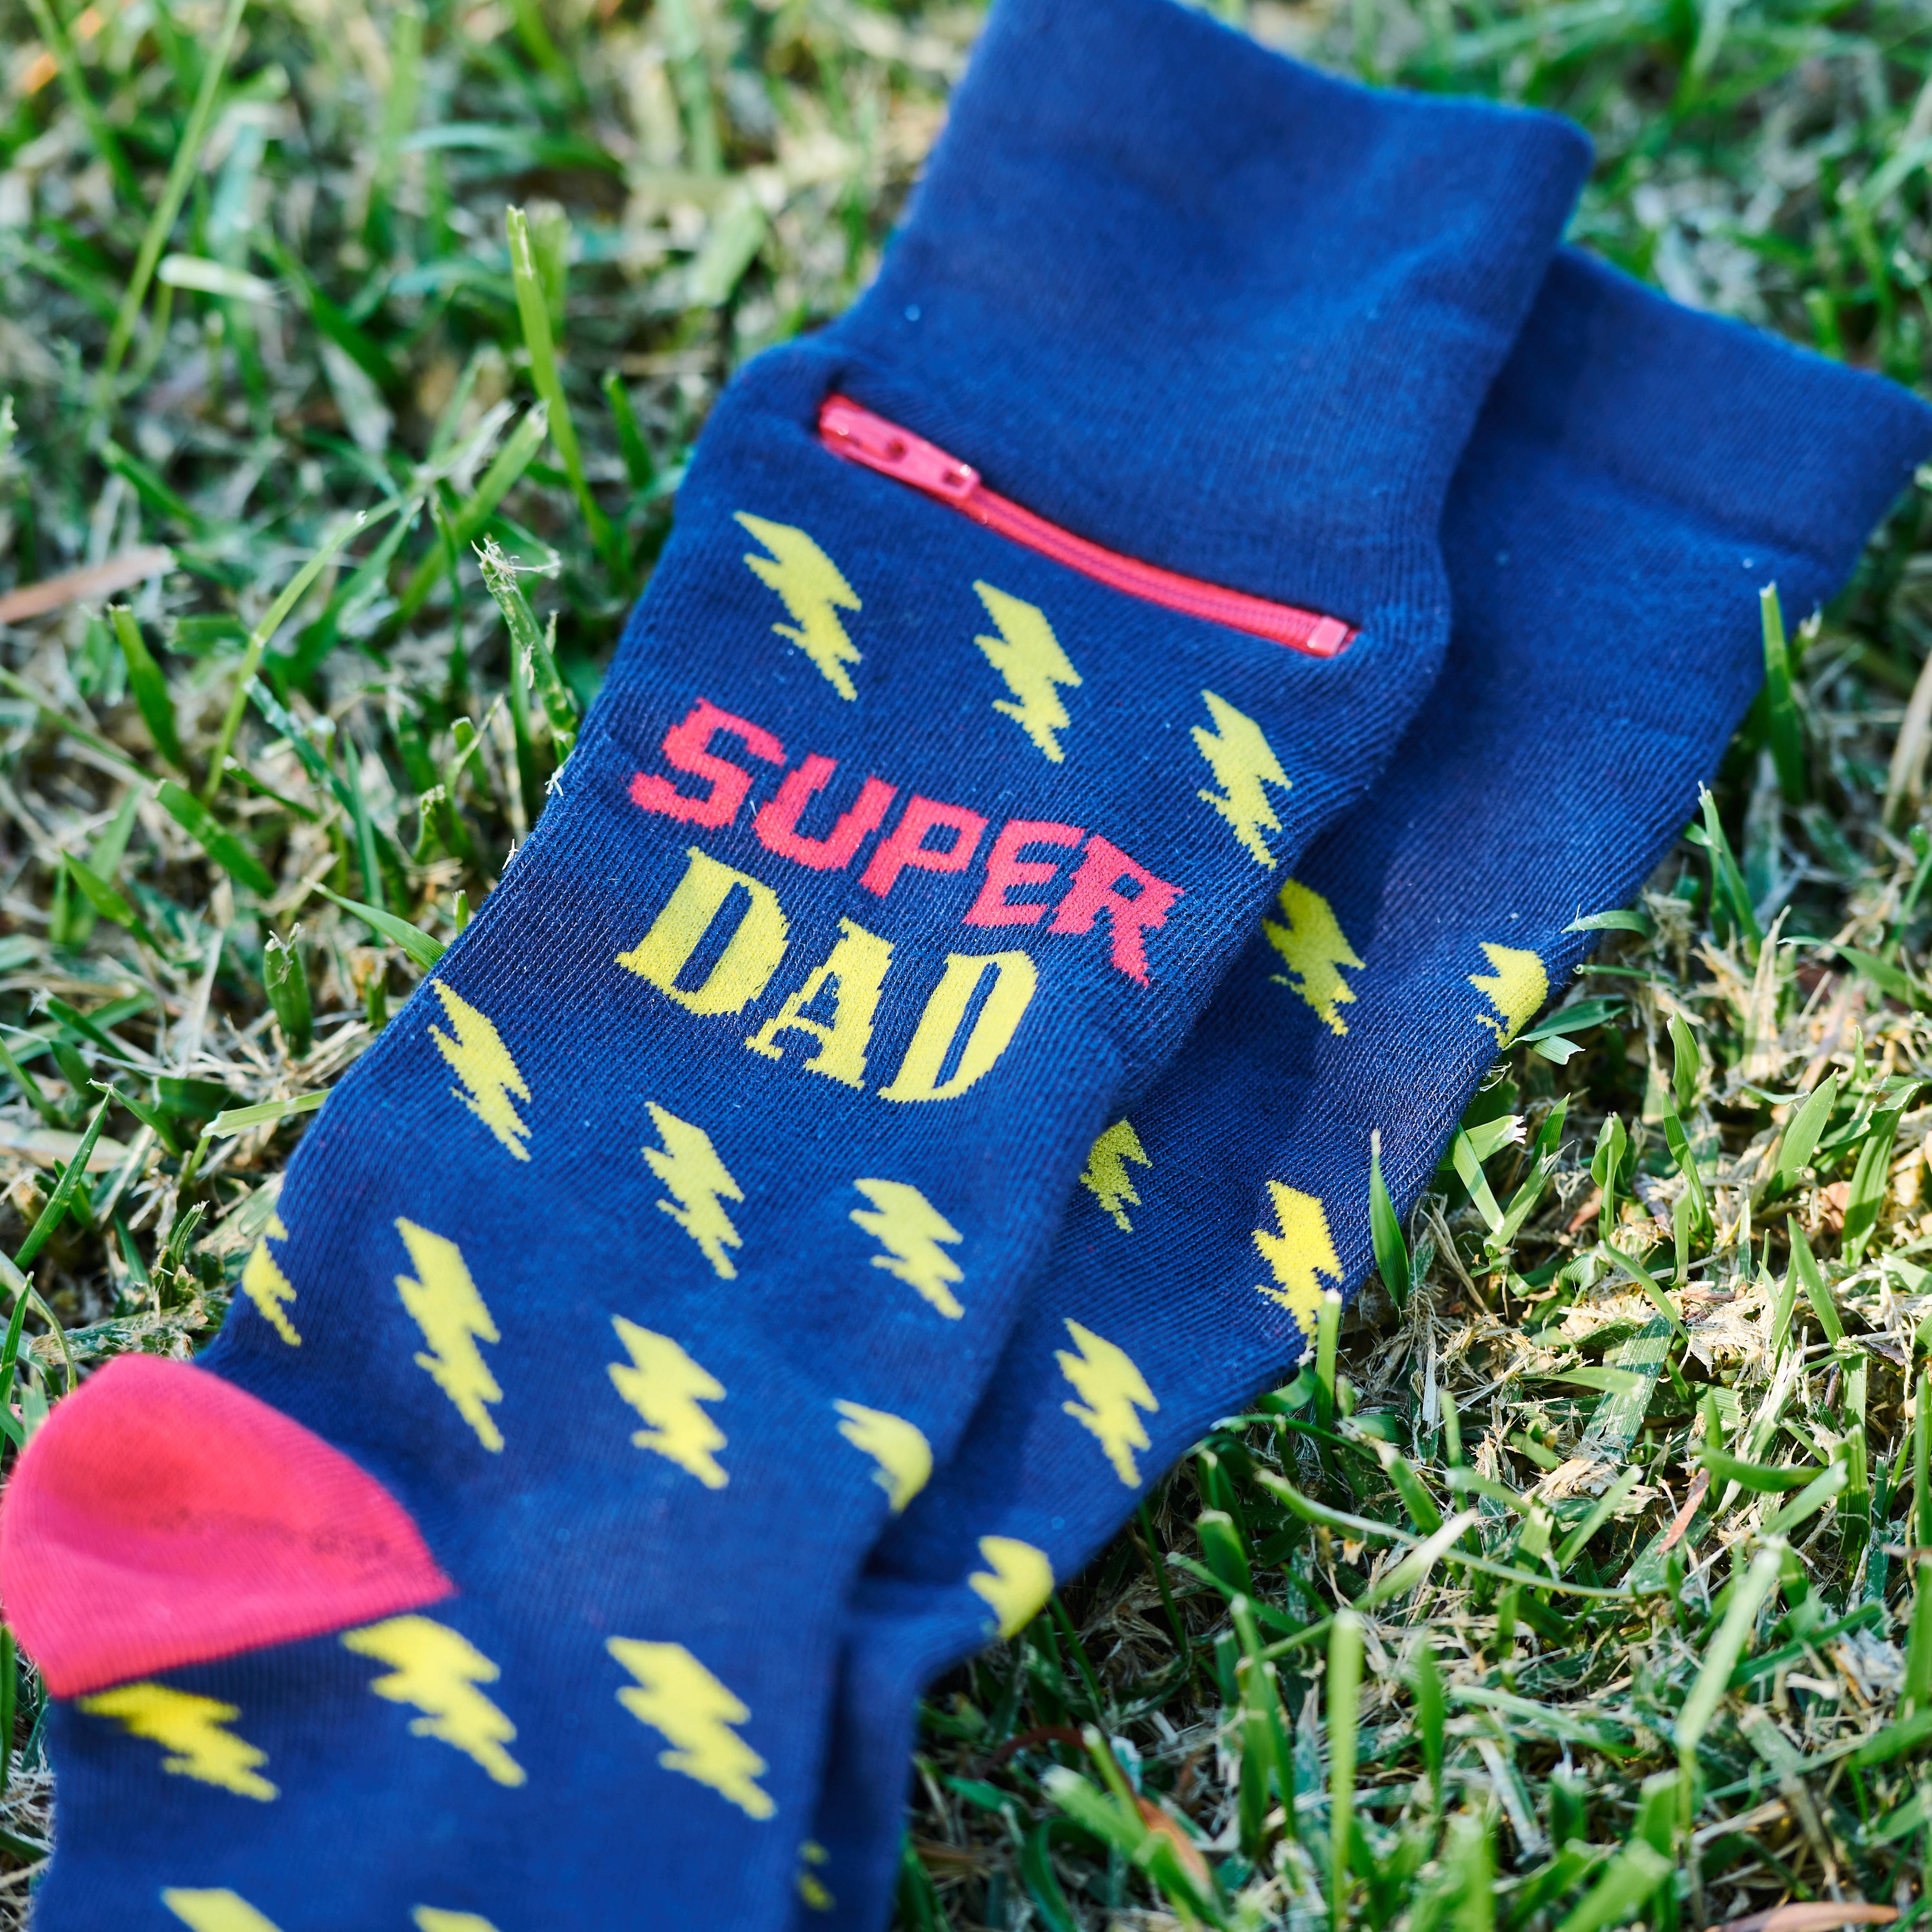 Pocket Socks® Super Dad, Mens